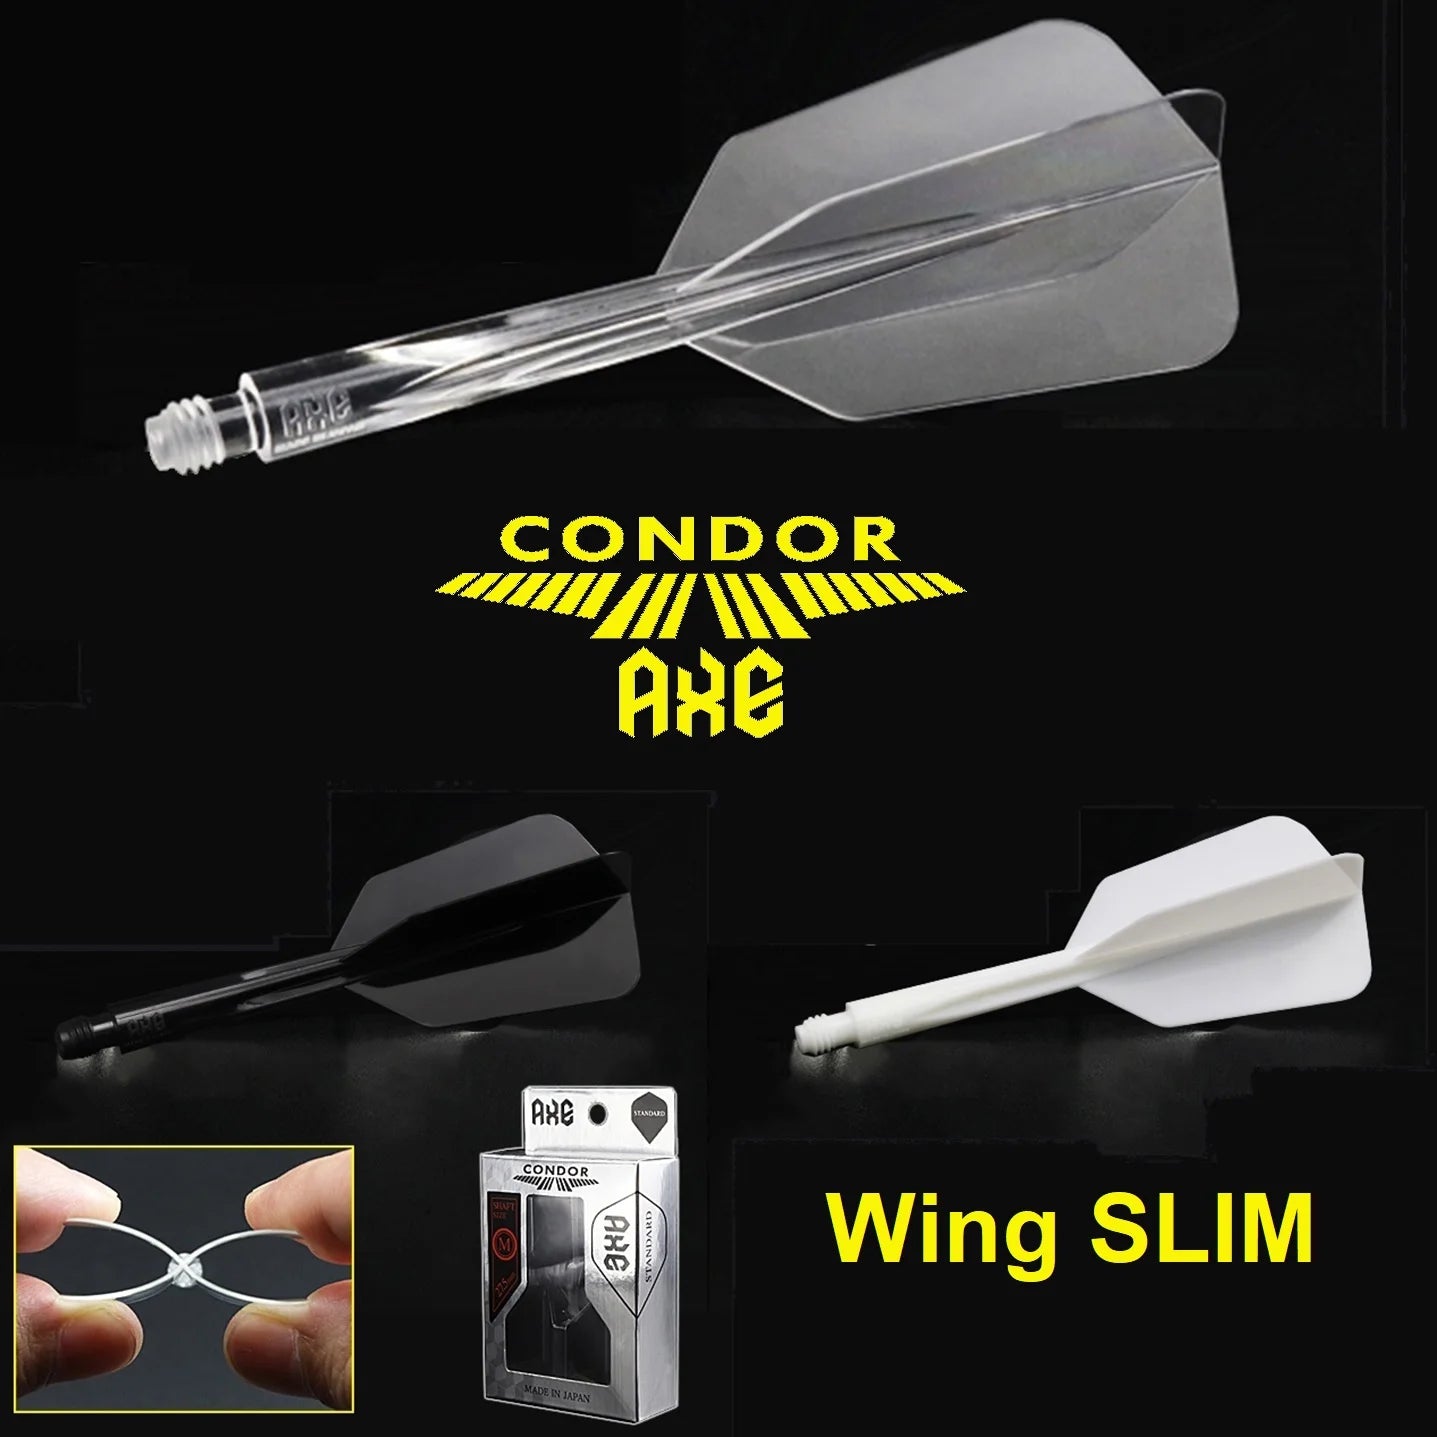 Condor "A.X.E." Wing SLIM Flight System